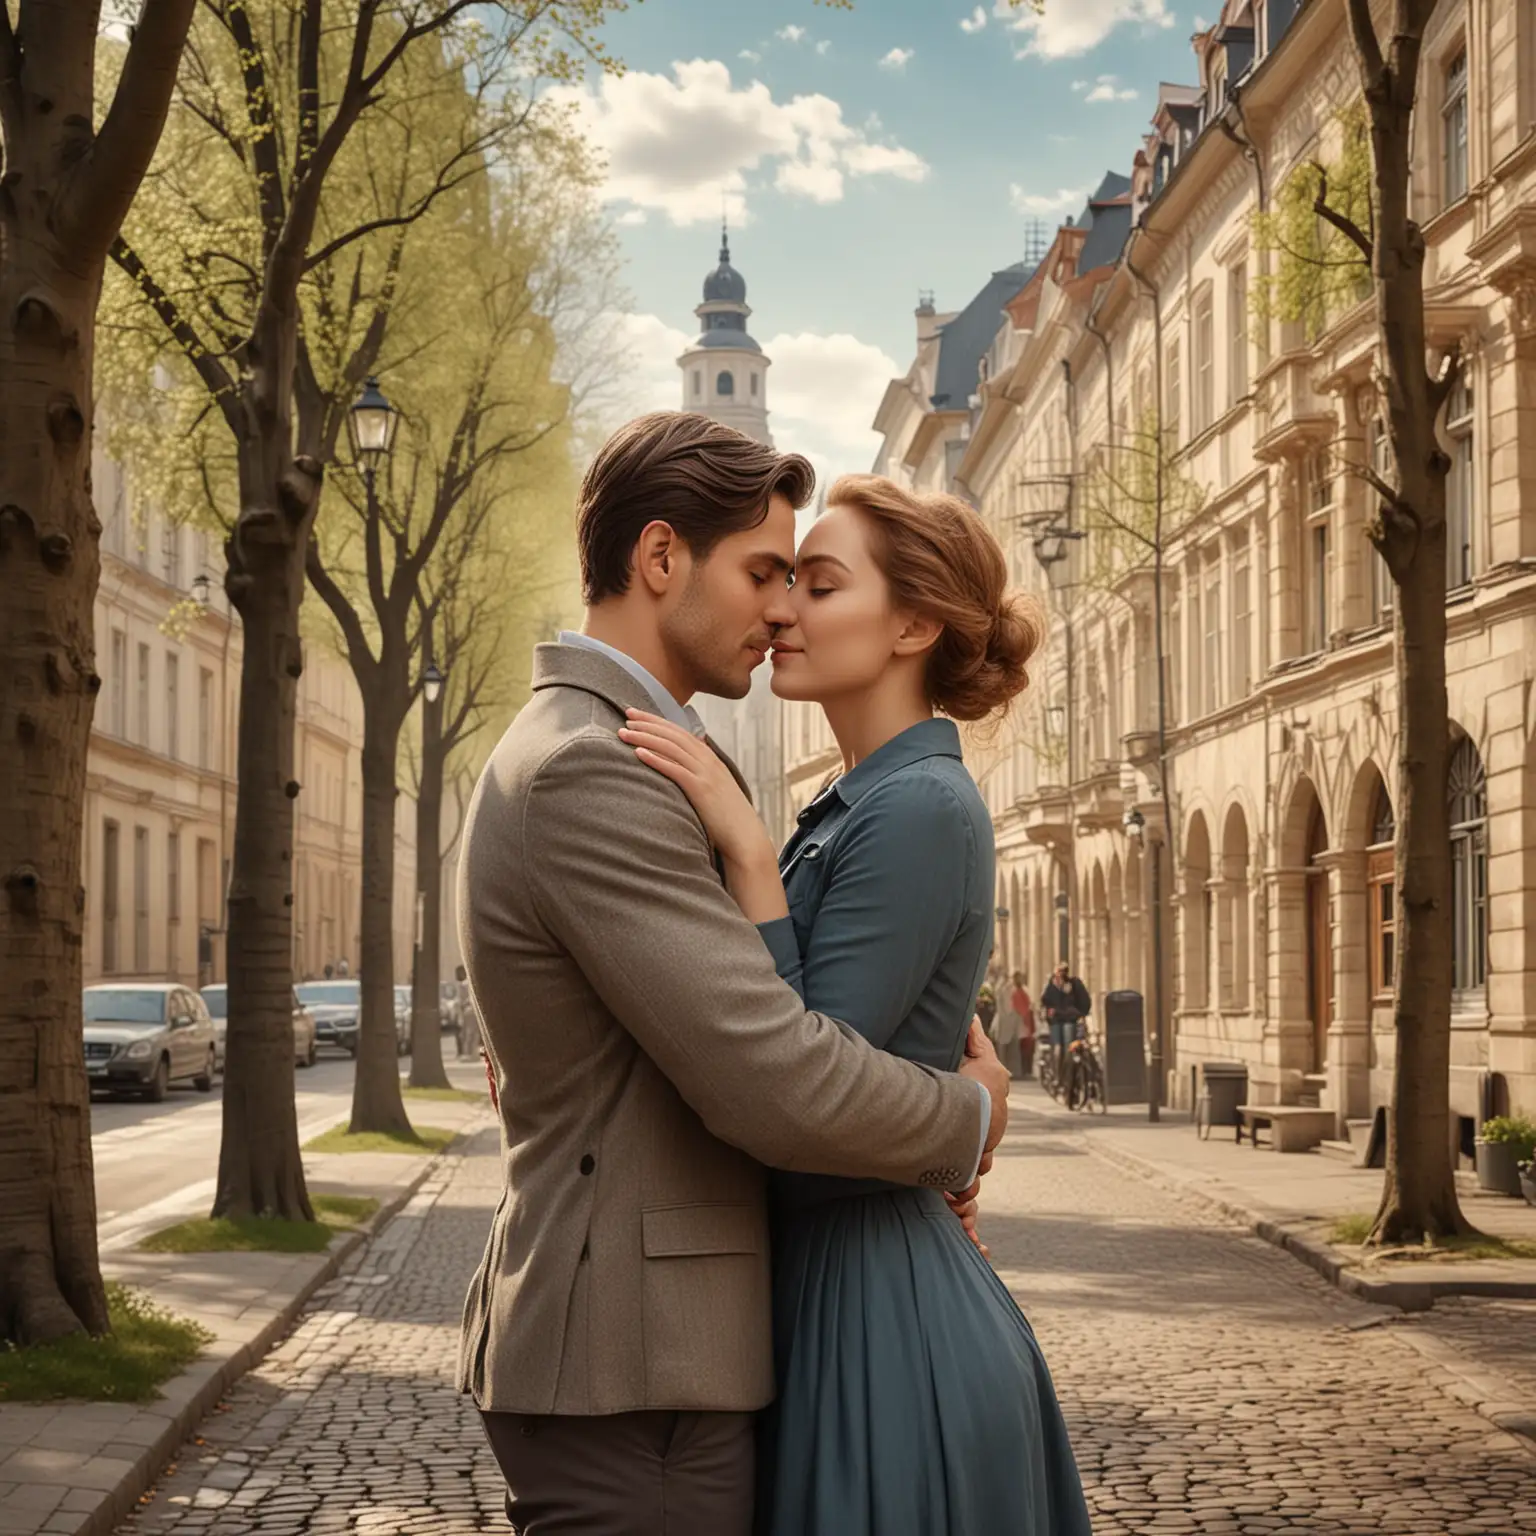 Fotorealistisches Liebespaar. Mitteleuropäischer Mann und mitteleuropäische Frau umarmen sich liebevoll. Sie stehen in einer Straße mit historischen Häusern und einer Baumallee. Die Jahreszeit ist Frühling.